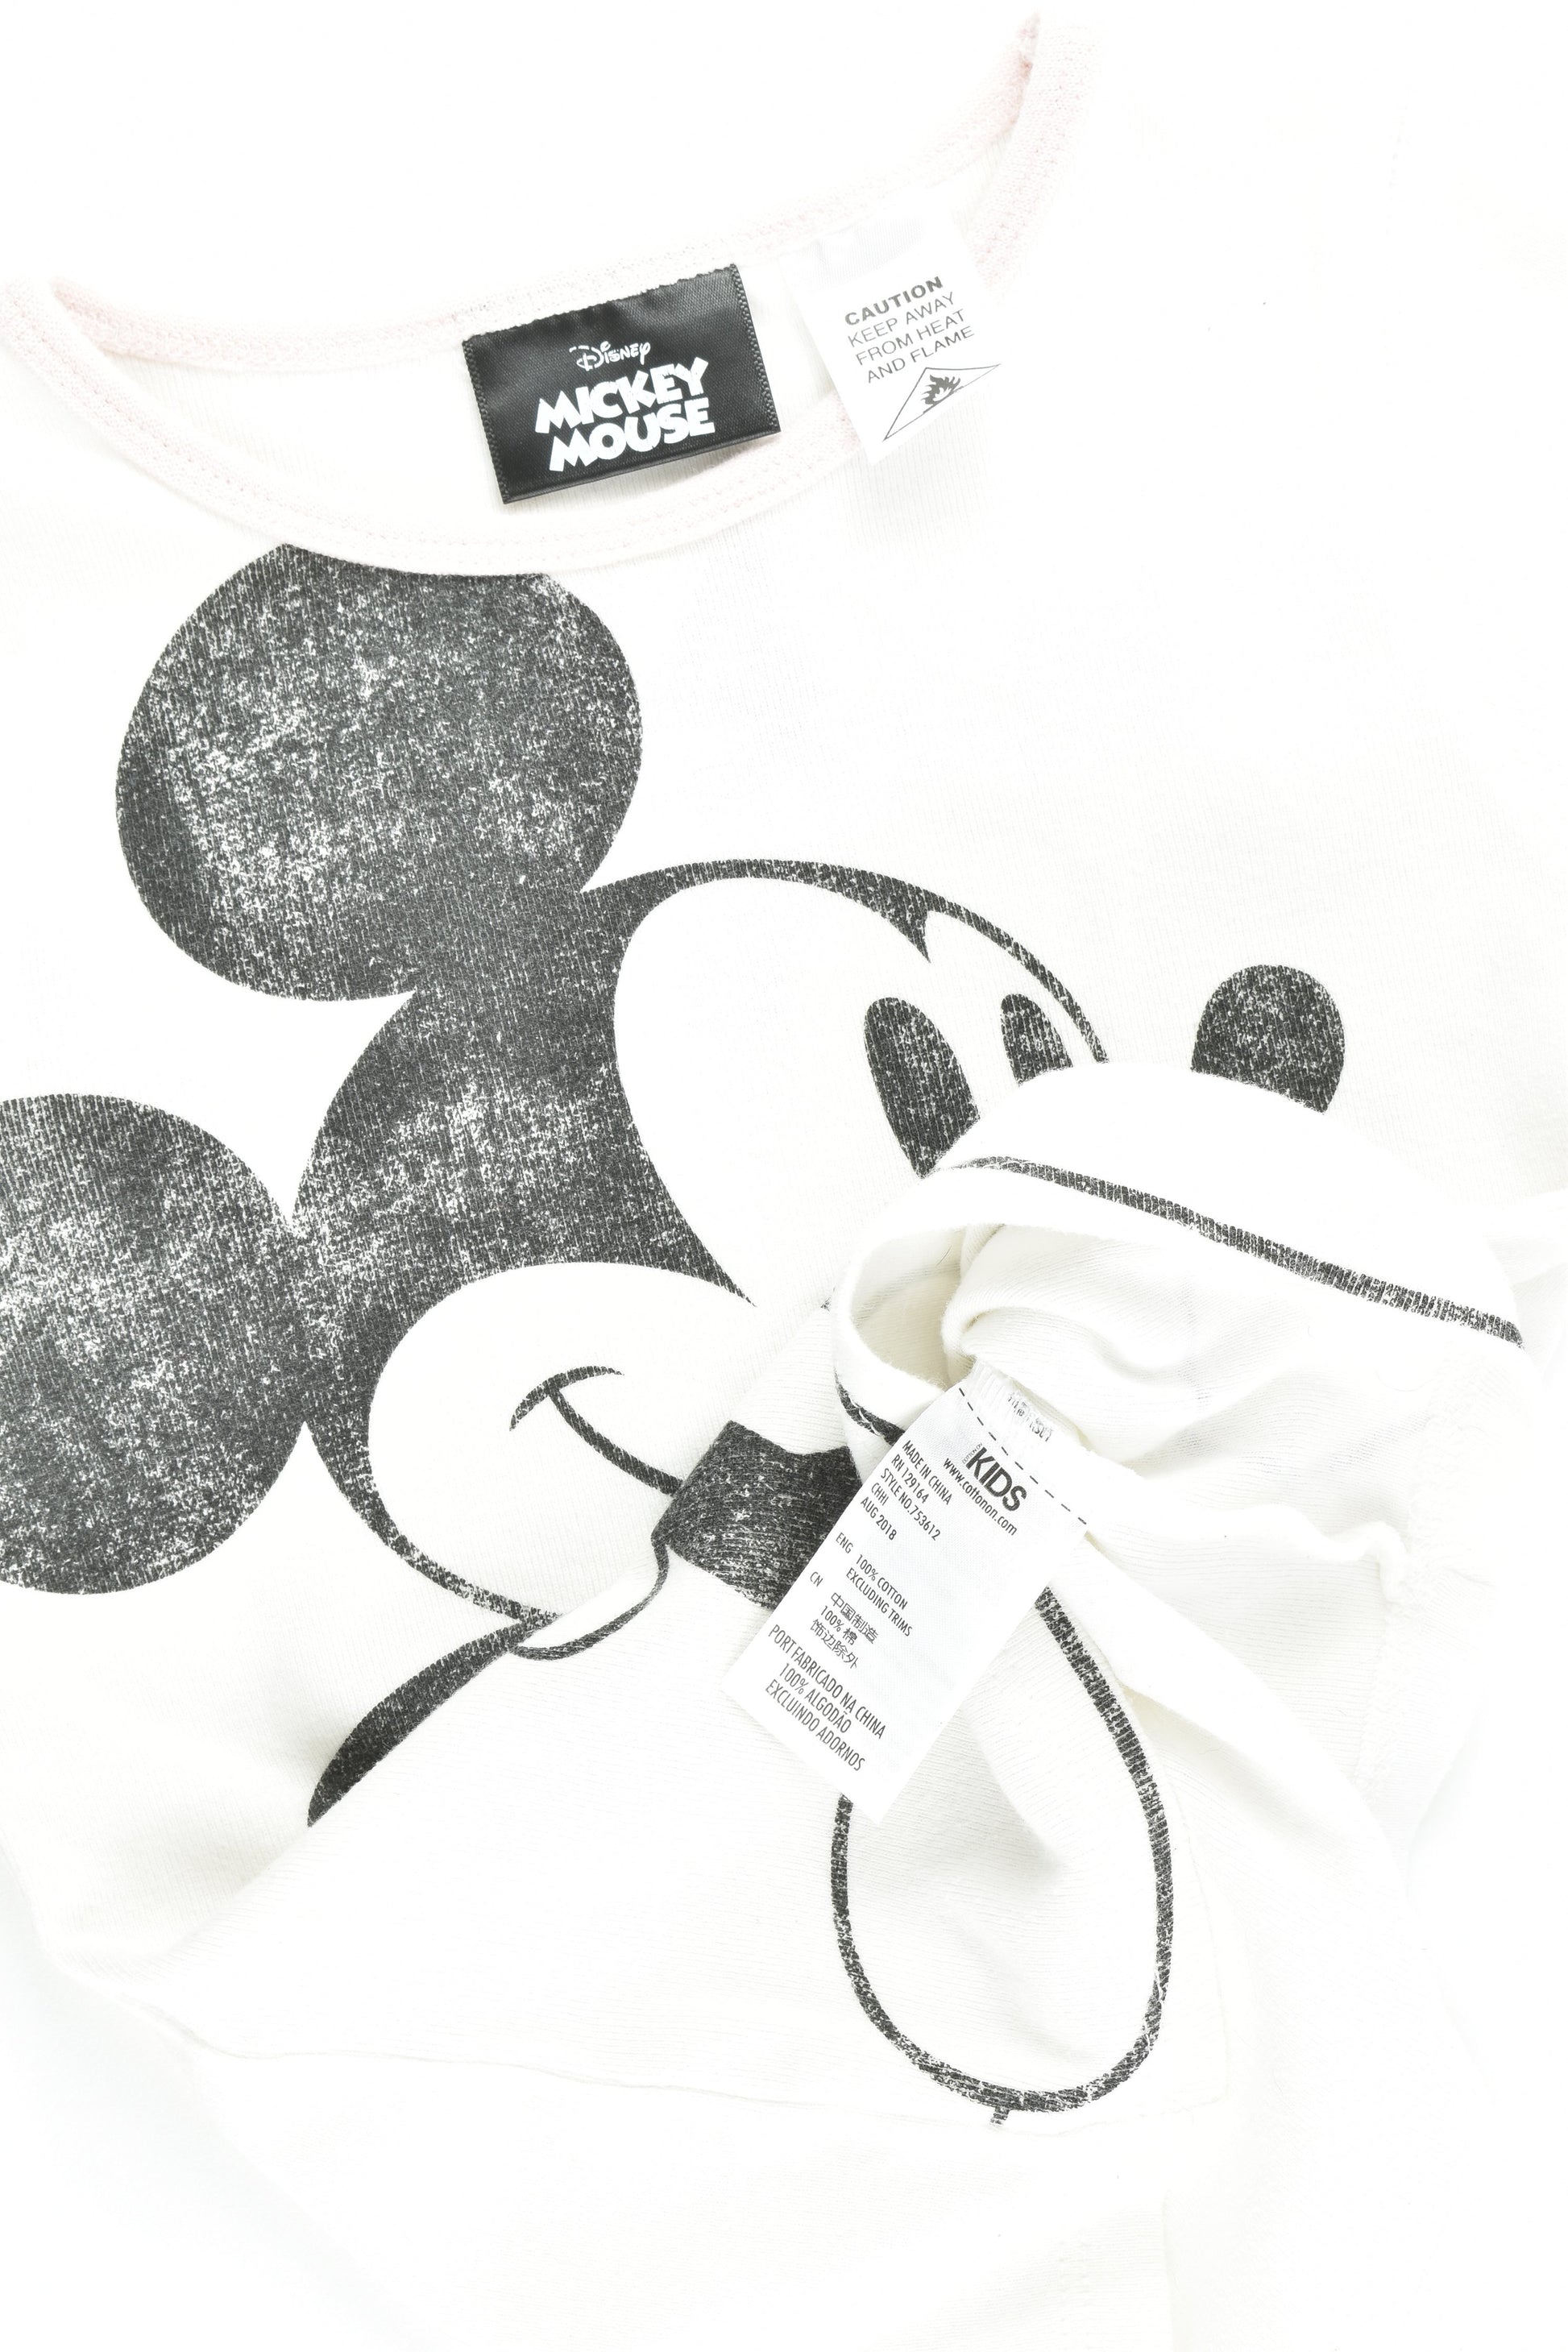 Cotton On Kids Size 4 Mickey Mouse Pj Set